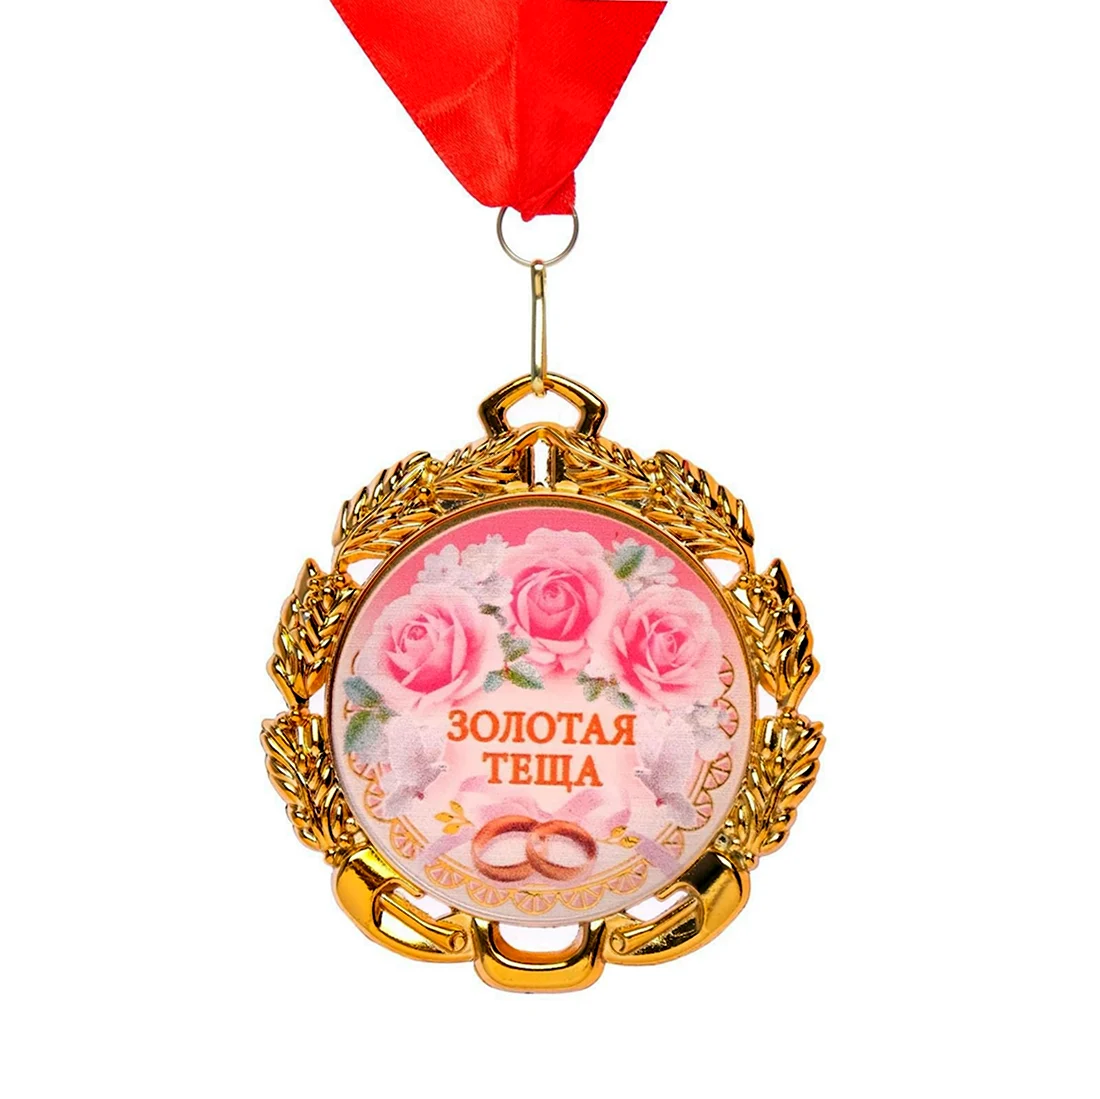 Медаль свекрови